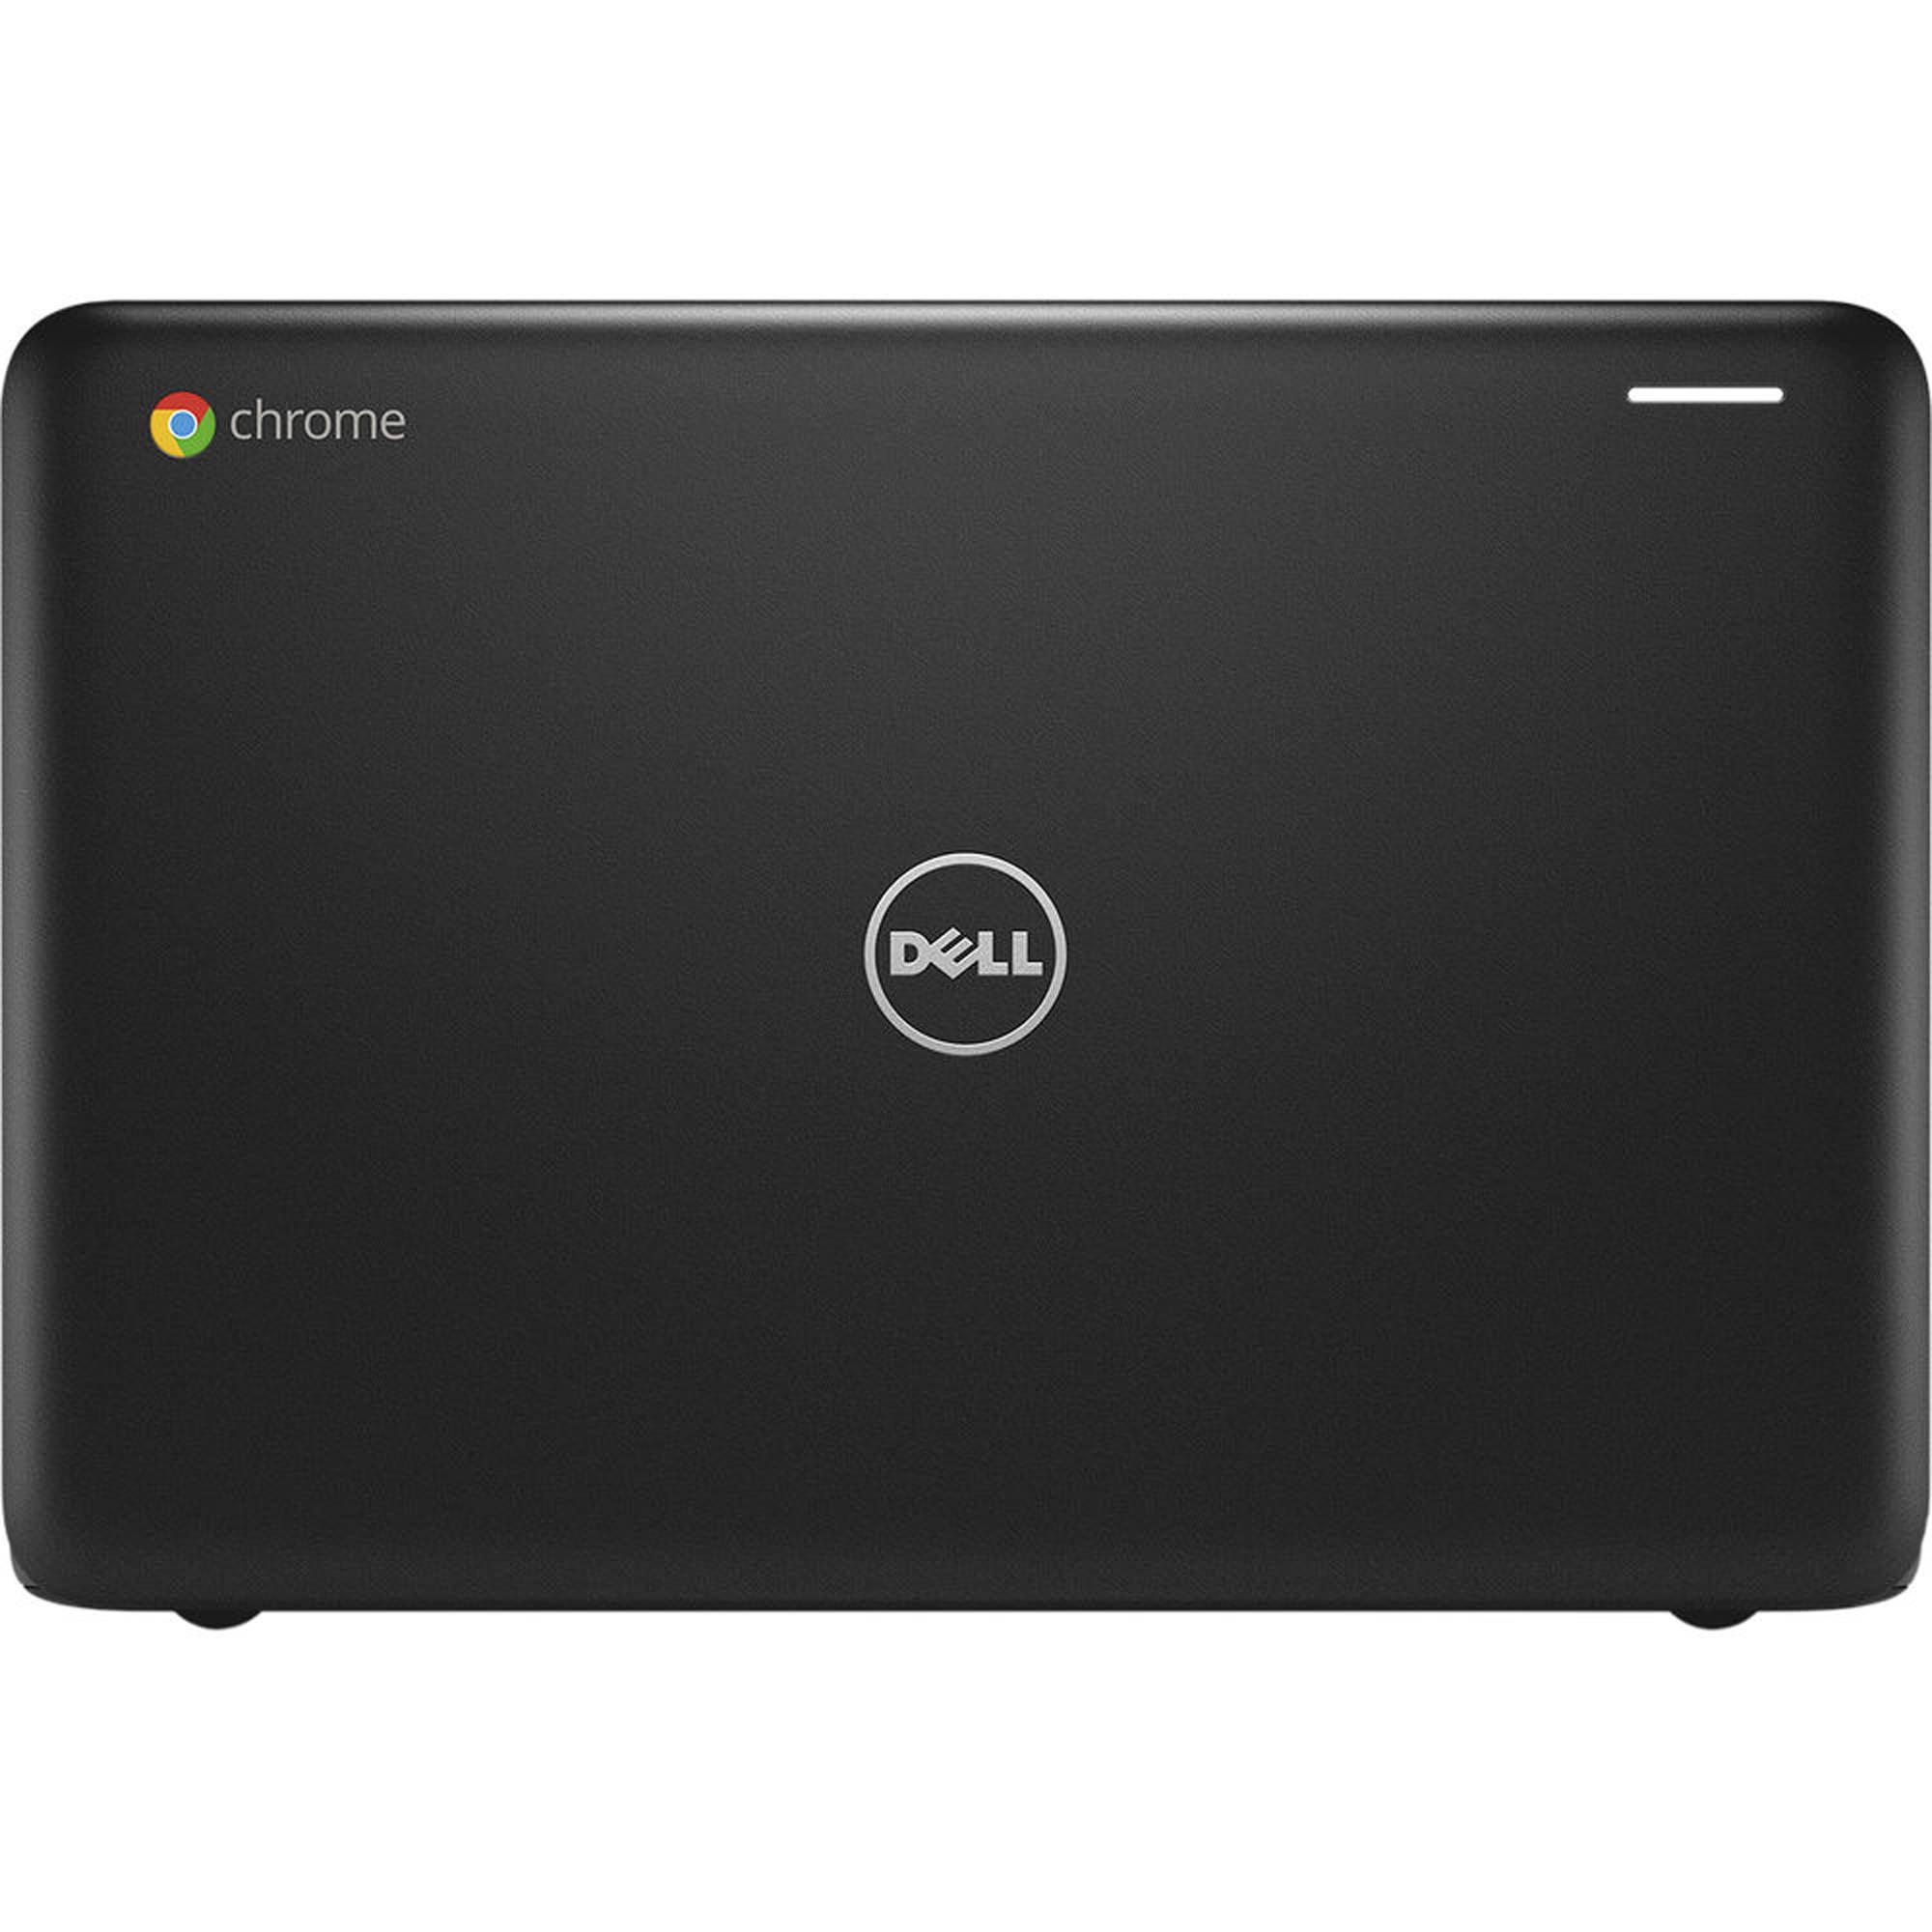 Dell 3180 Chromebook 11 6 Laptop Intel Celeron N3060 4gb 16gb